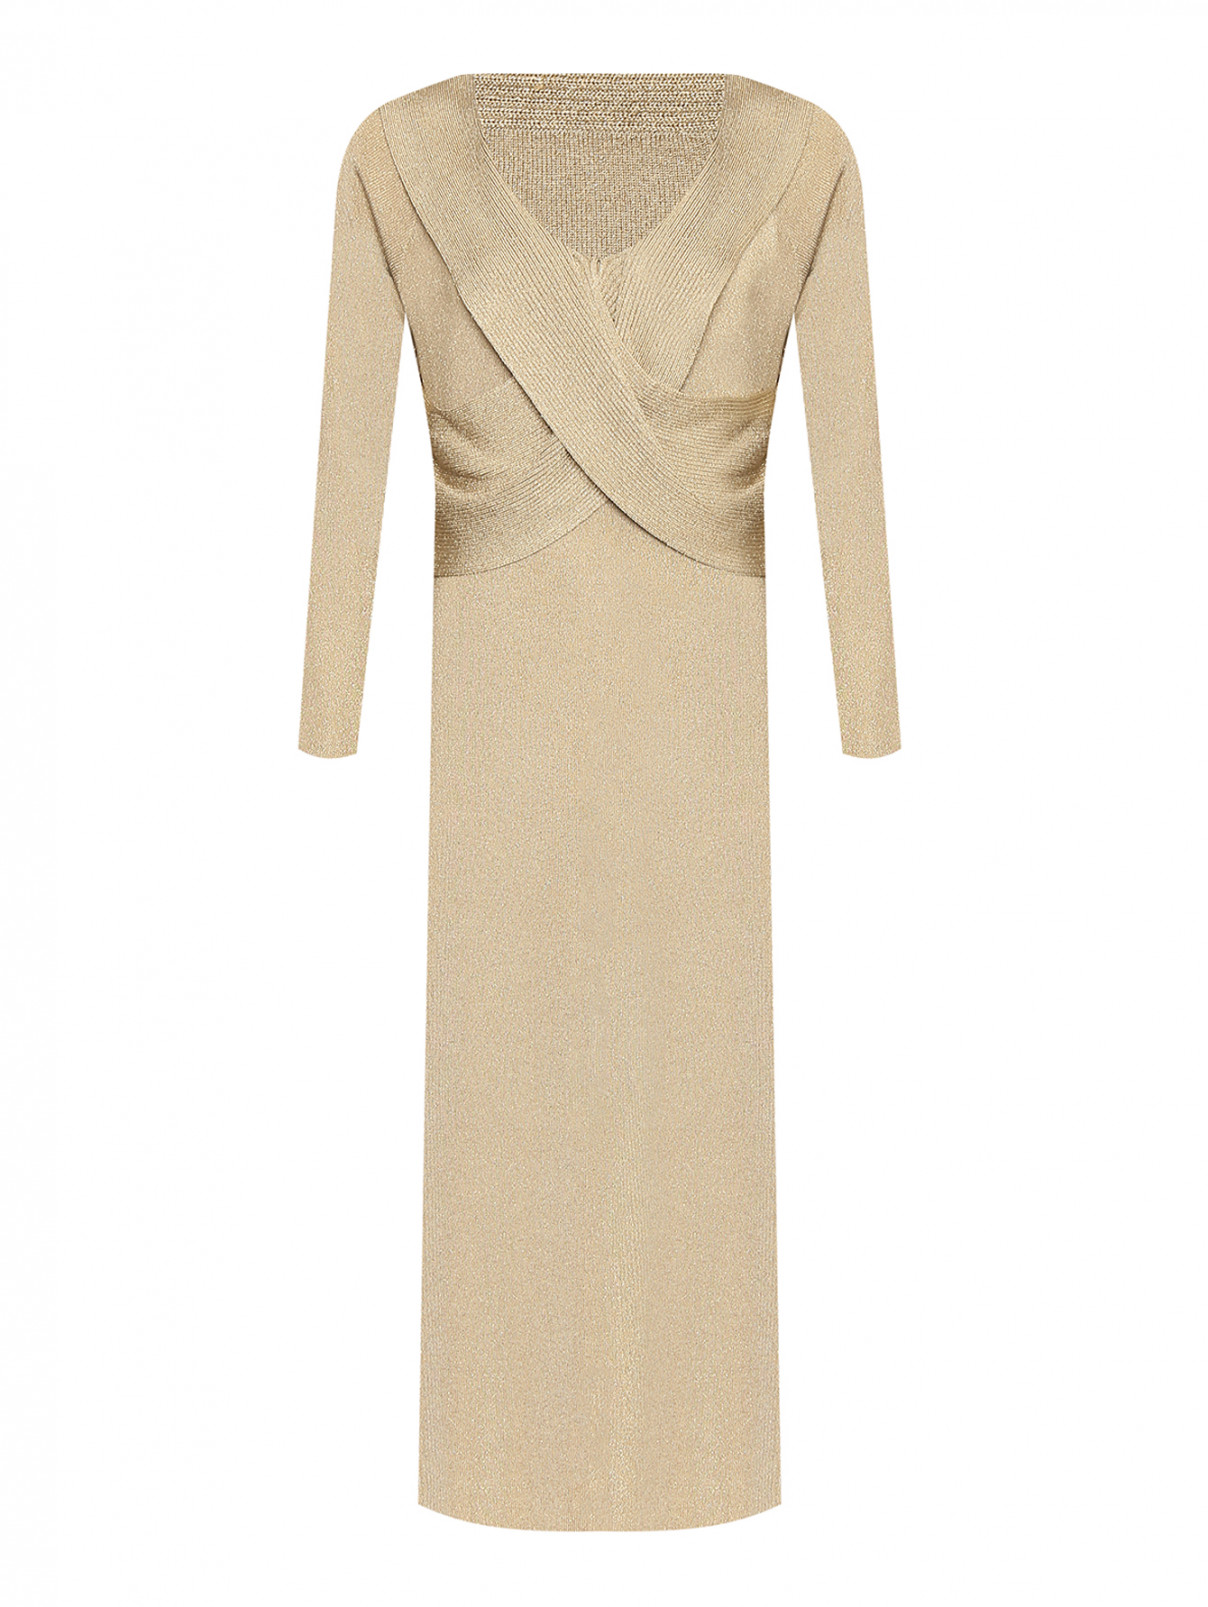 Платье-макси из вискозы Luisa Spagnoli  –  Общий вид  – Цвет:  Золотой